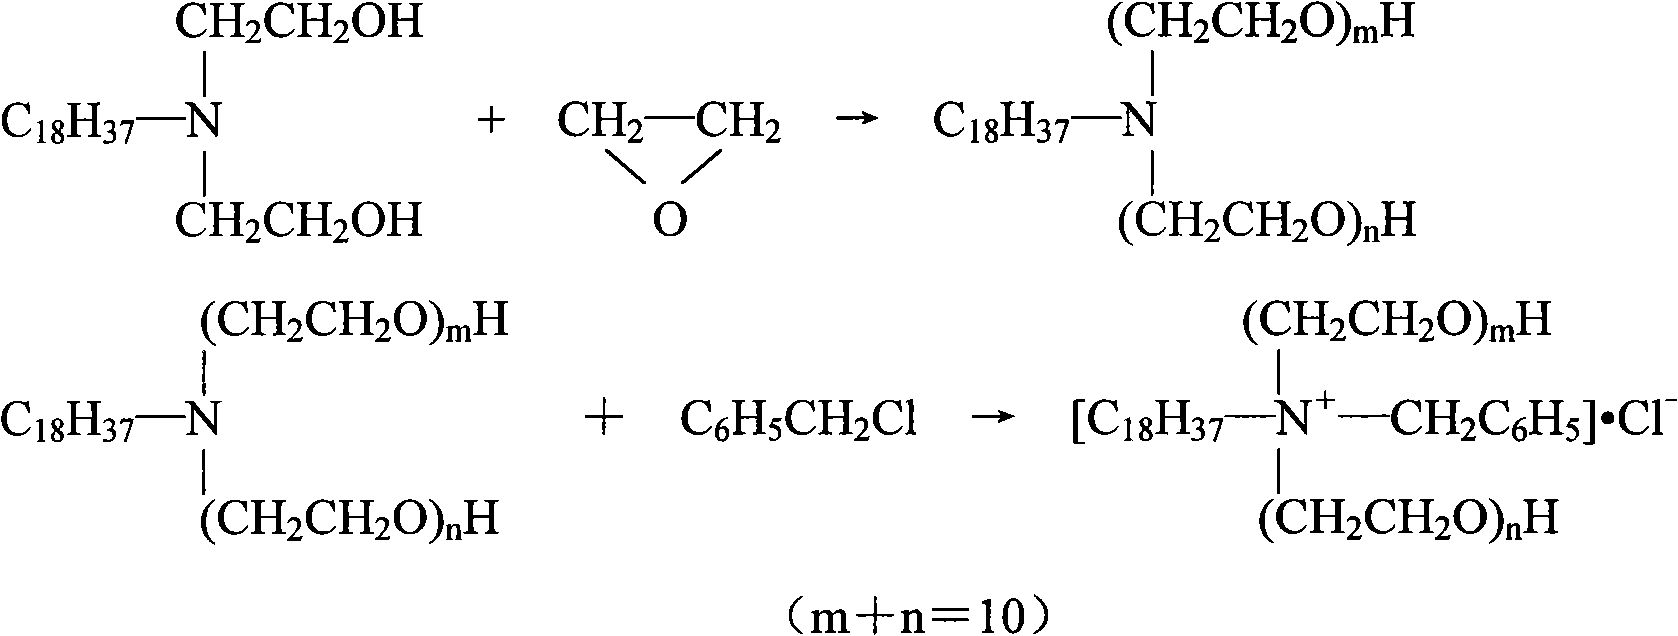 Method for synthesizing octadecyl bi-polyoxyethylene benzyl ammonium chloride